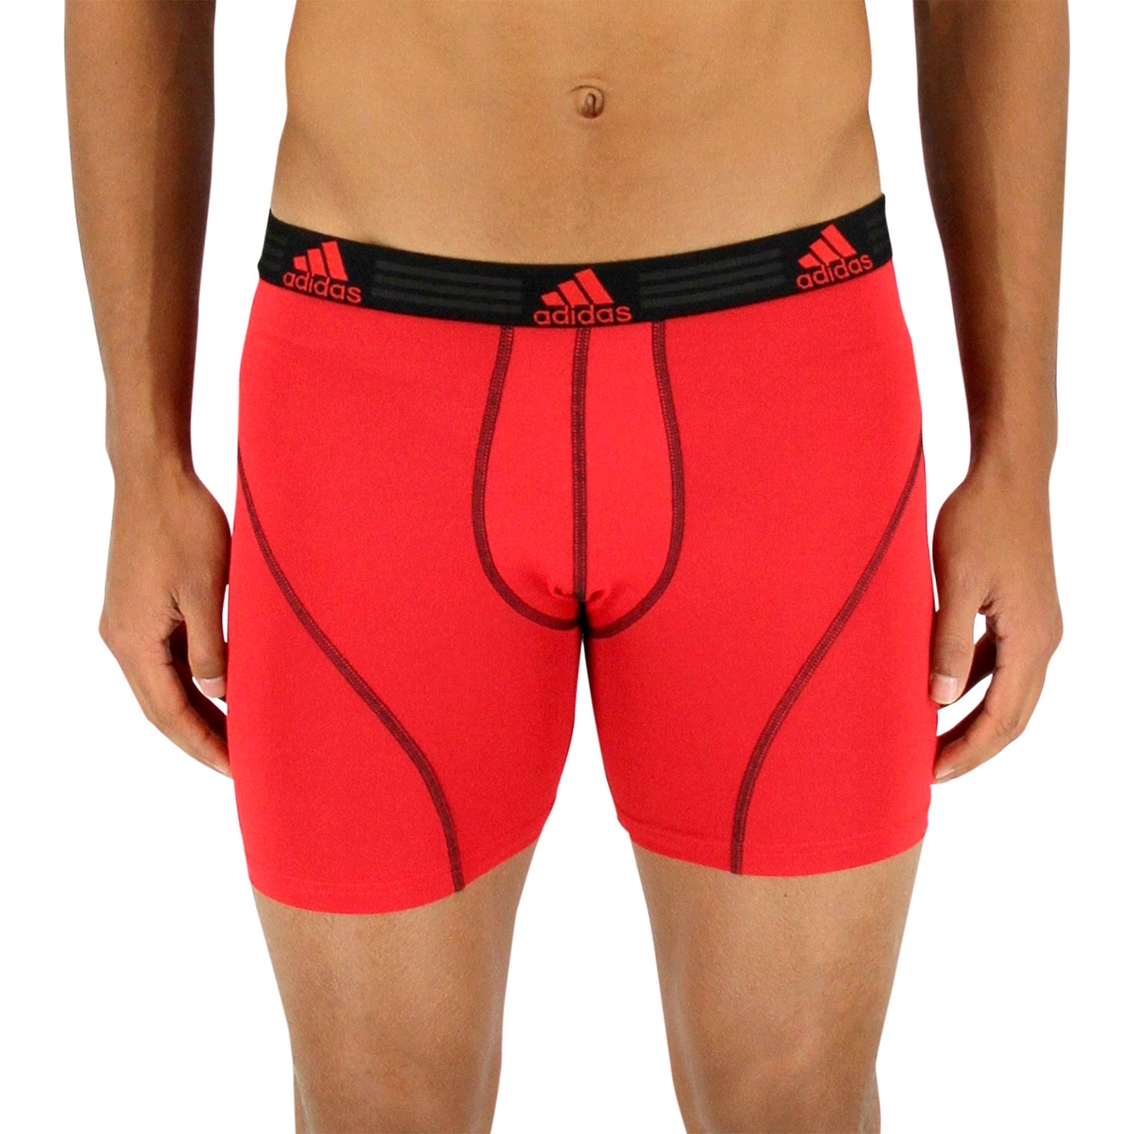 Adidas Sport Performance Climalite Boxer Brief 2 Pk. | Underwear ...